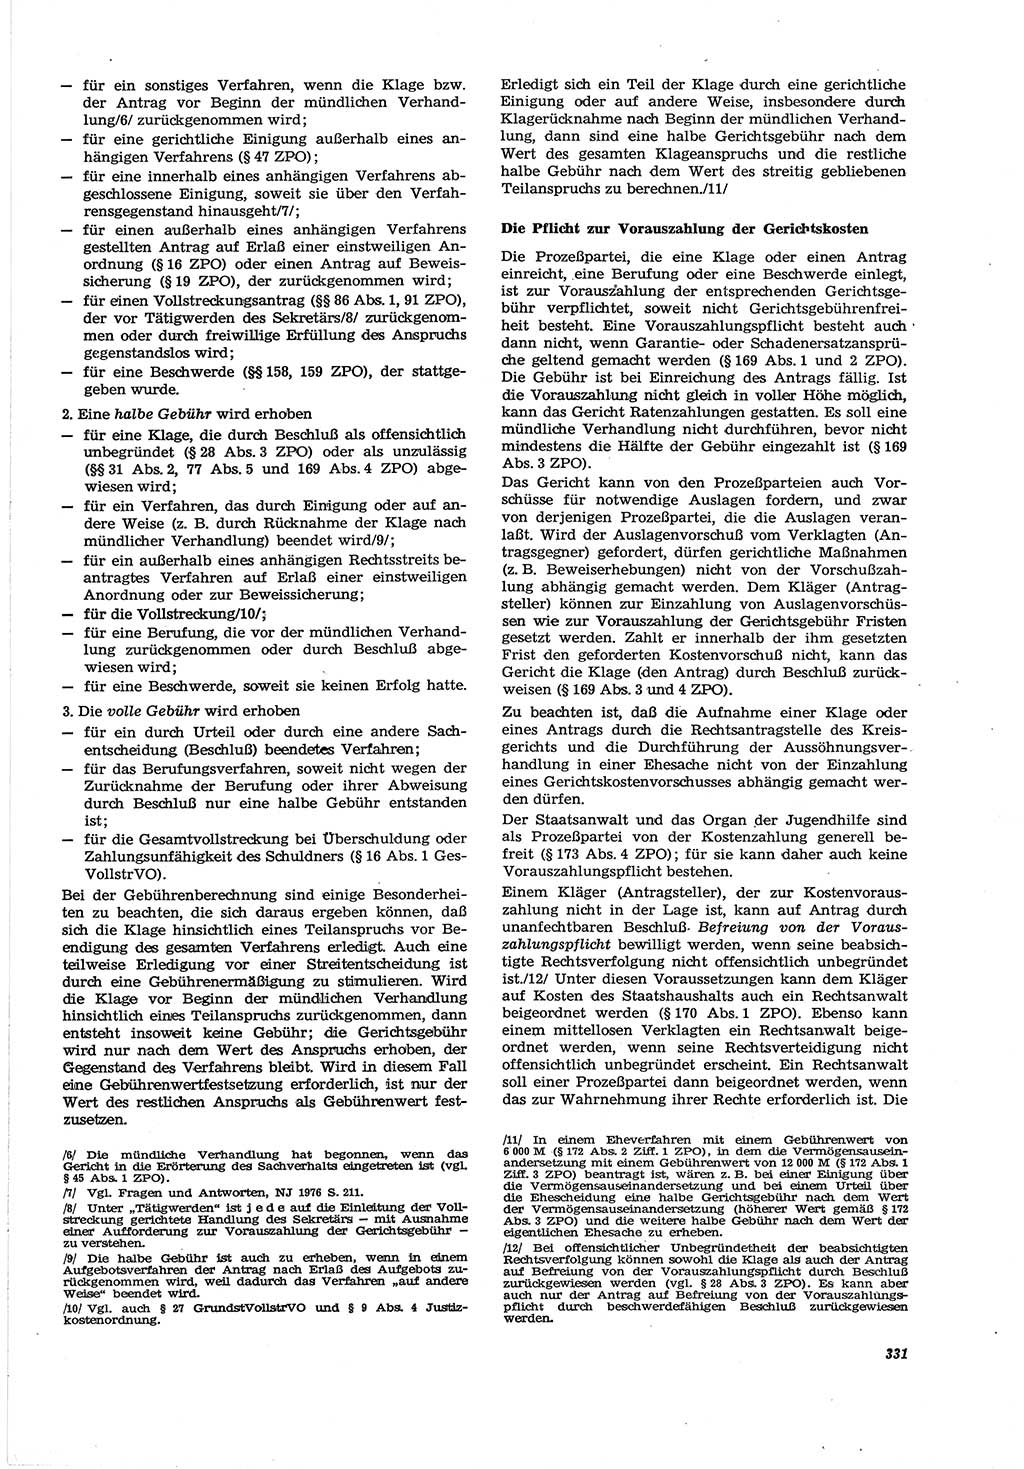 Neue Justiz (NJ), Zeitschrift für Recht und Rechtswissenschaft [Deutsche Demokratische Republik (DDR)], 30. Jahrgang 1976, Seite 331 (NJ DDR 1976, S. 331)